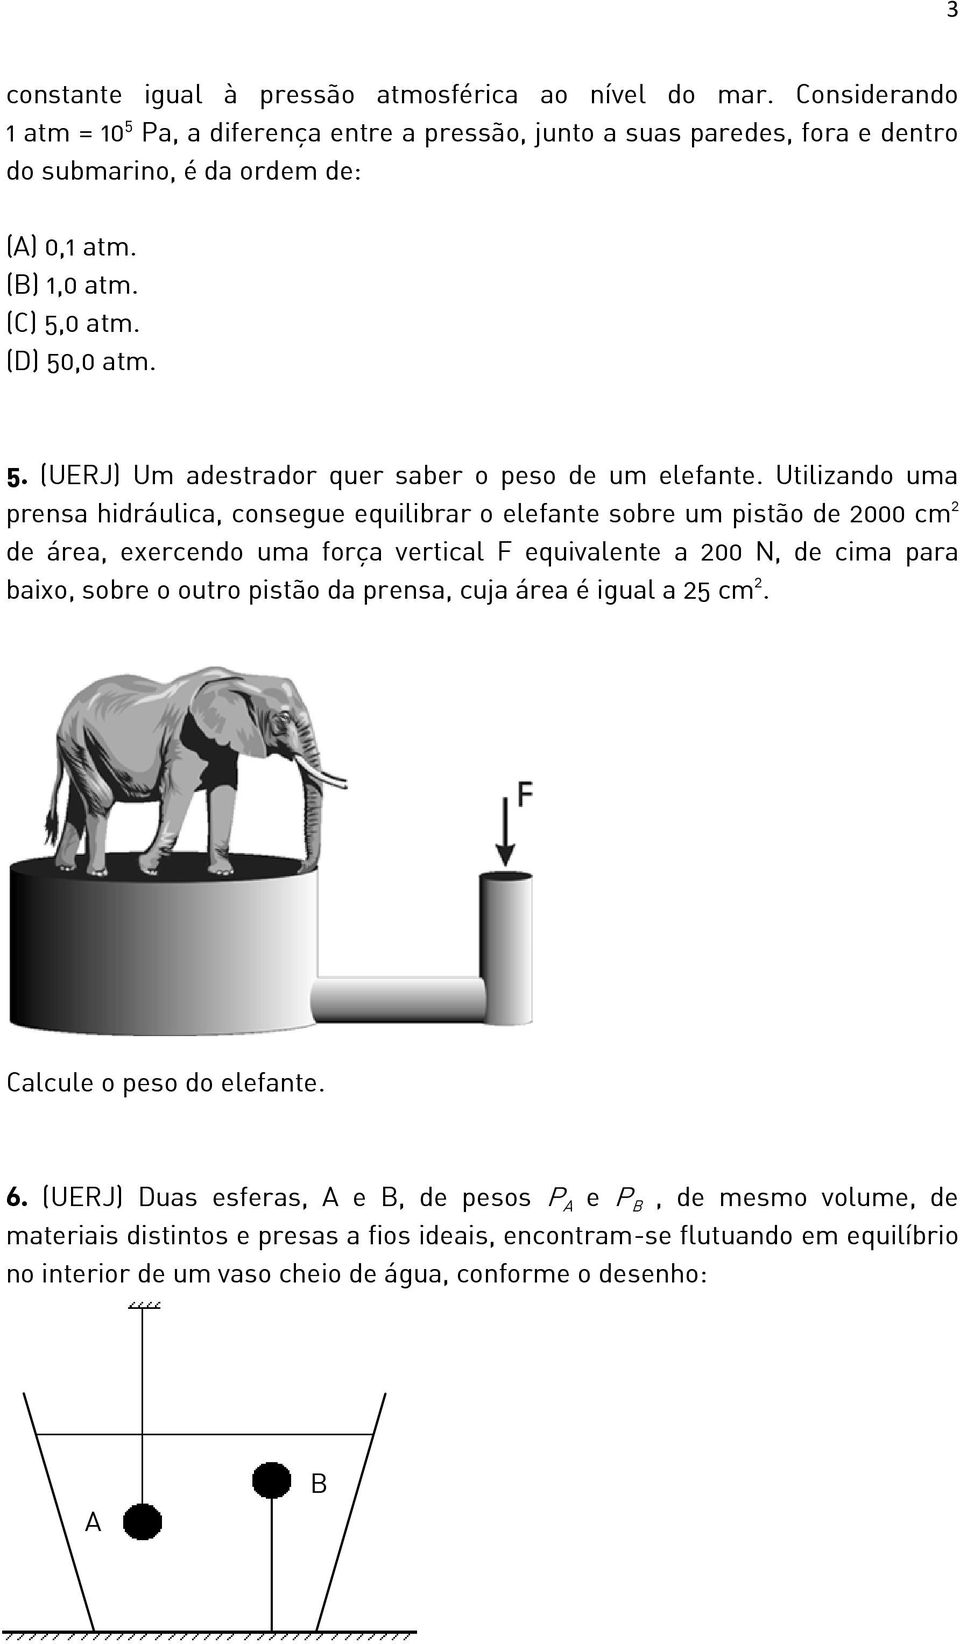 Utilizando uma prensa hidráulica, consegue equilibrar o elefante sobre um pistão de 2000 cm 2 de área, exercendo uma força vertical F equivalente a 200 N, de cima para baixo, sobre o outro